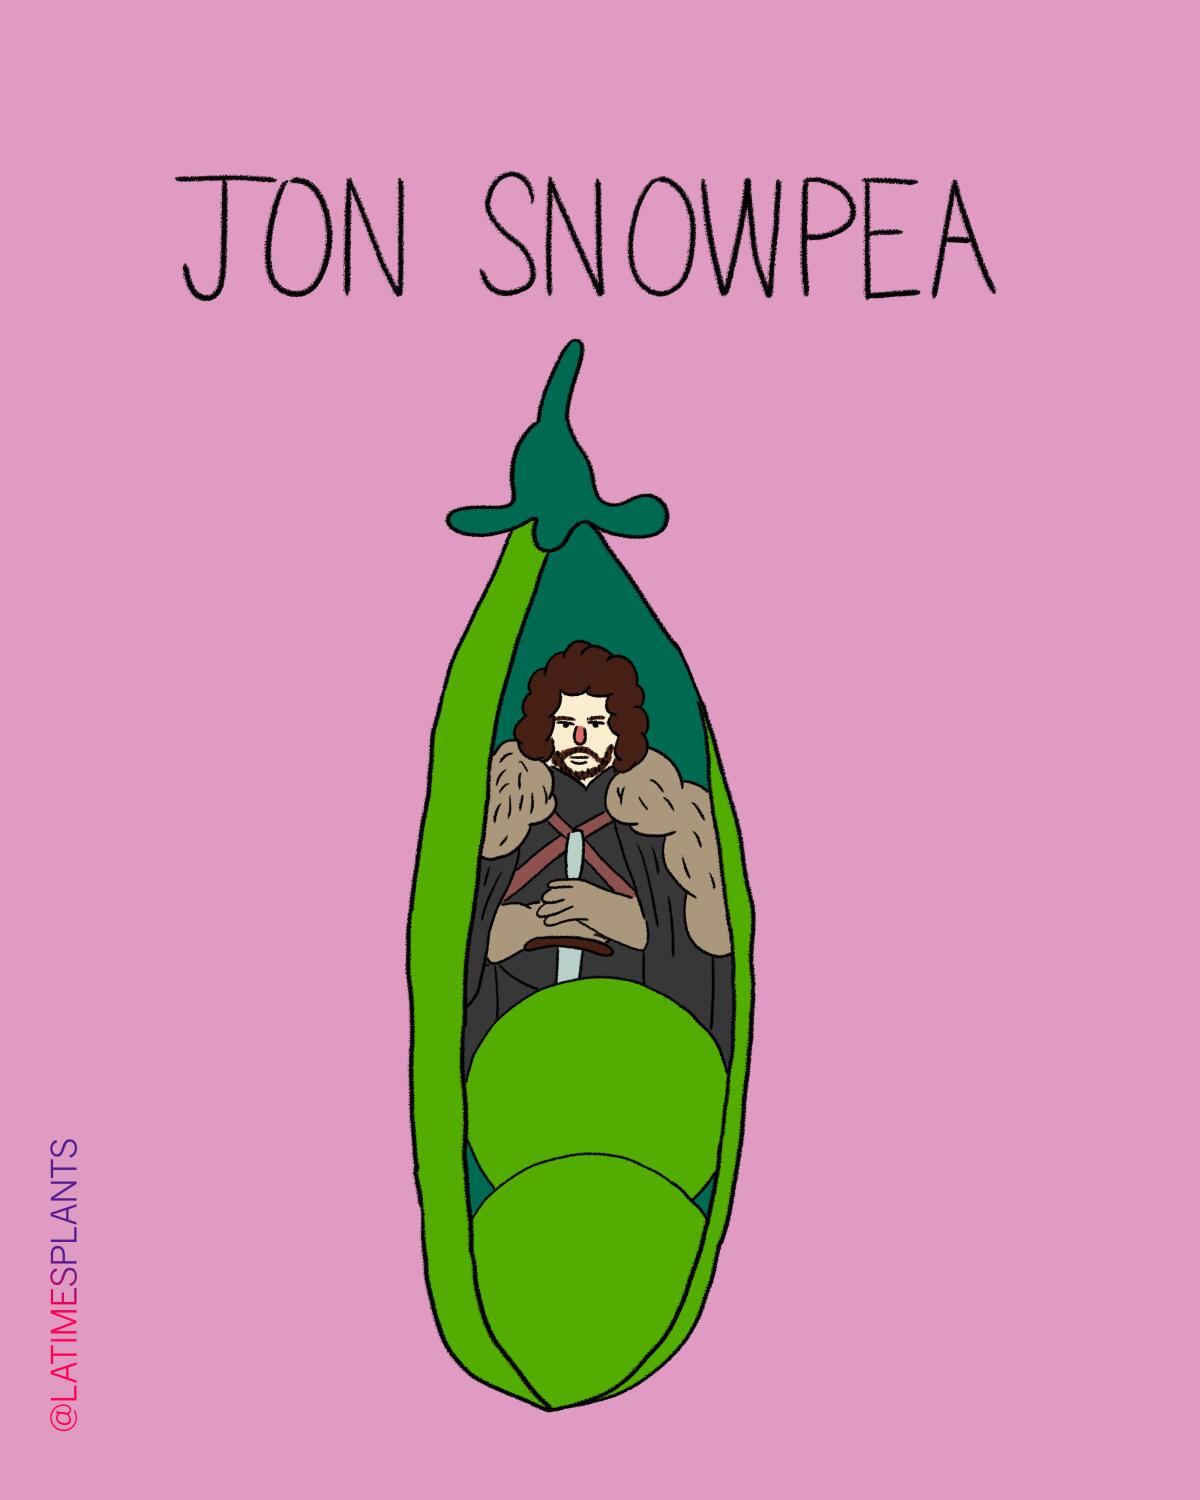 Jon Snowpea